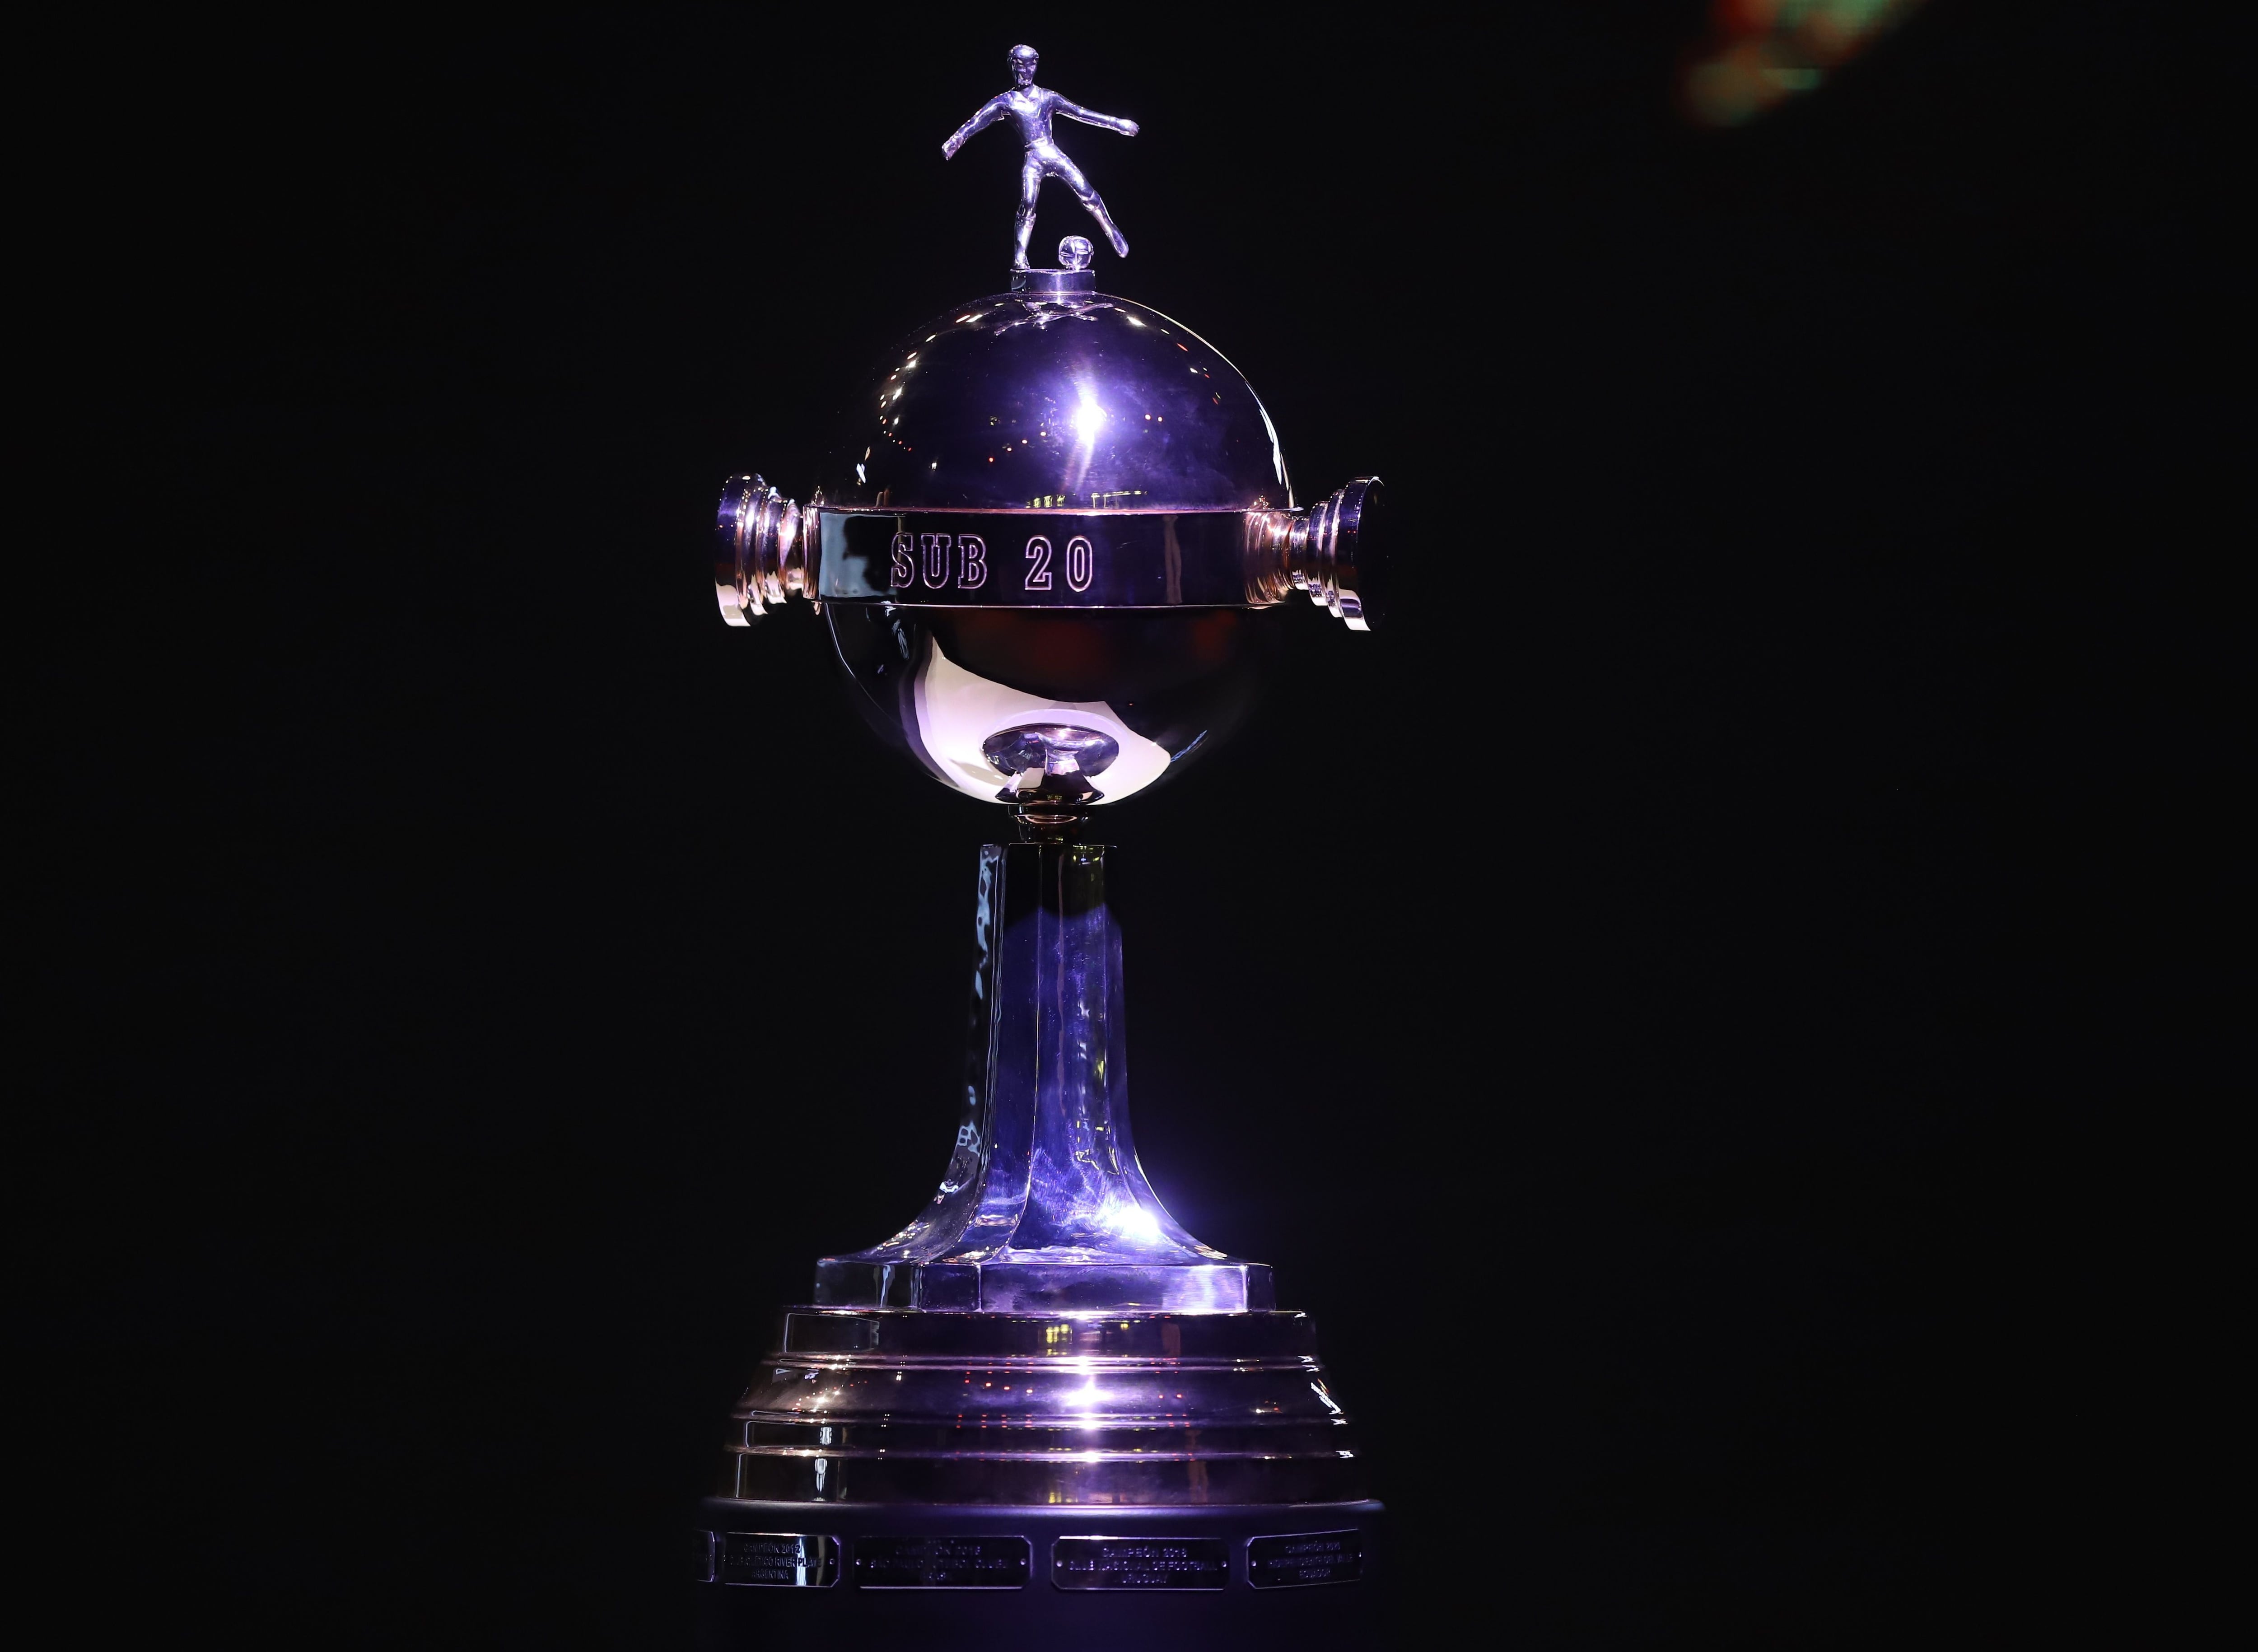 Independiente del Valle arranca con triunfo la Copa Libertadores sub 20